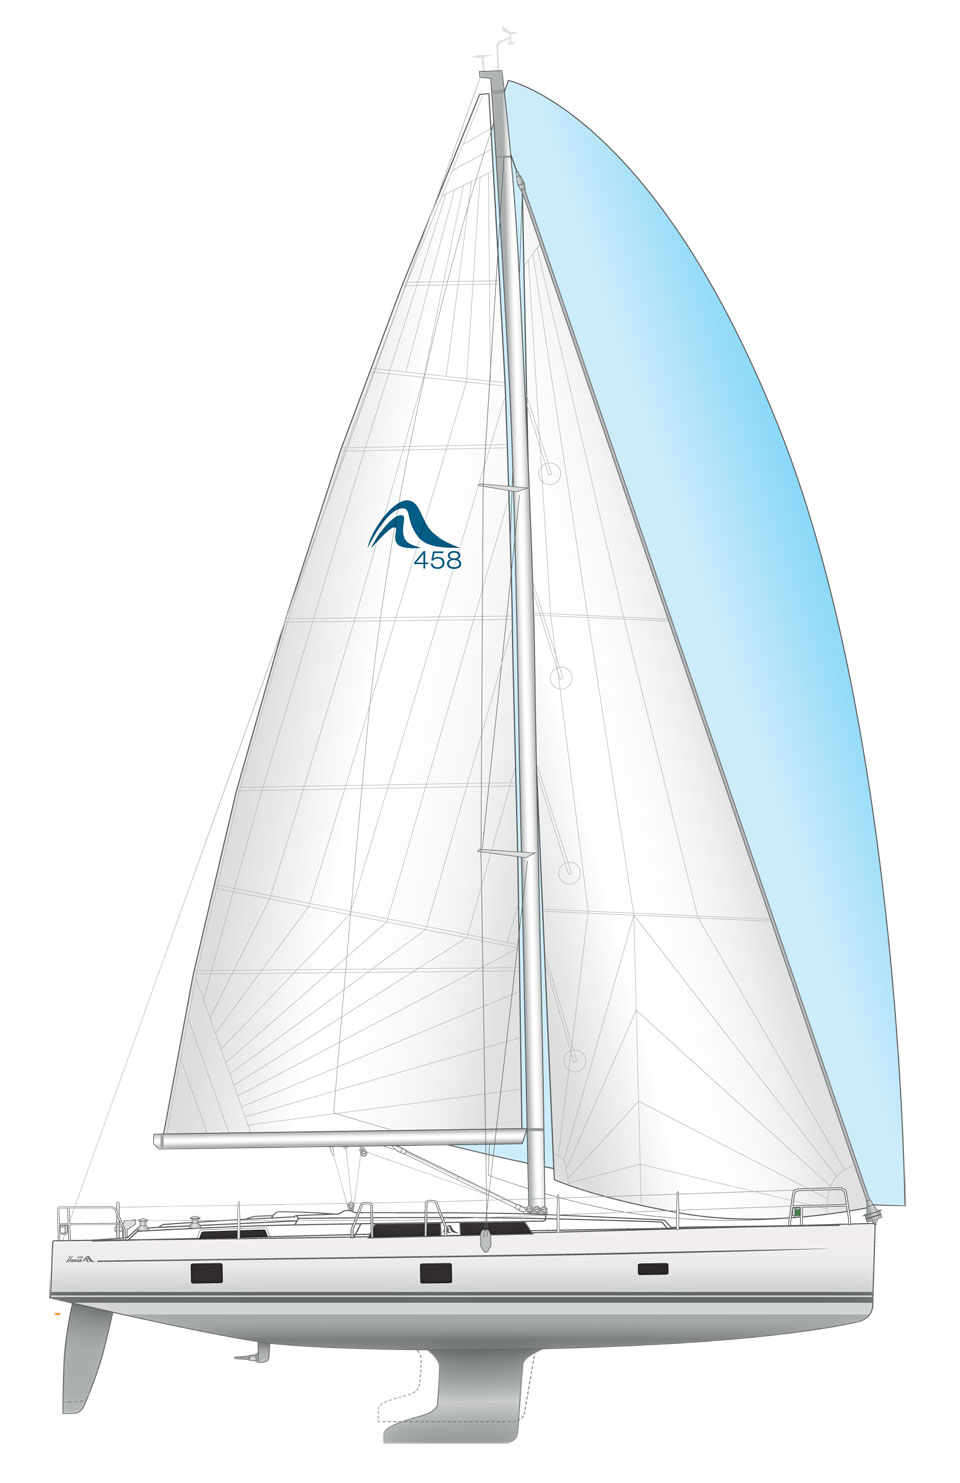 Hanse 458 sailplan & underwater profile